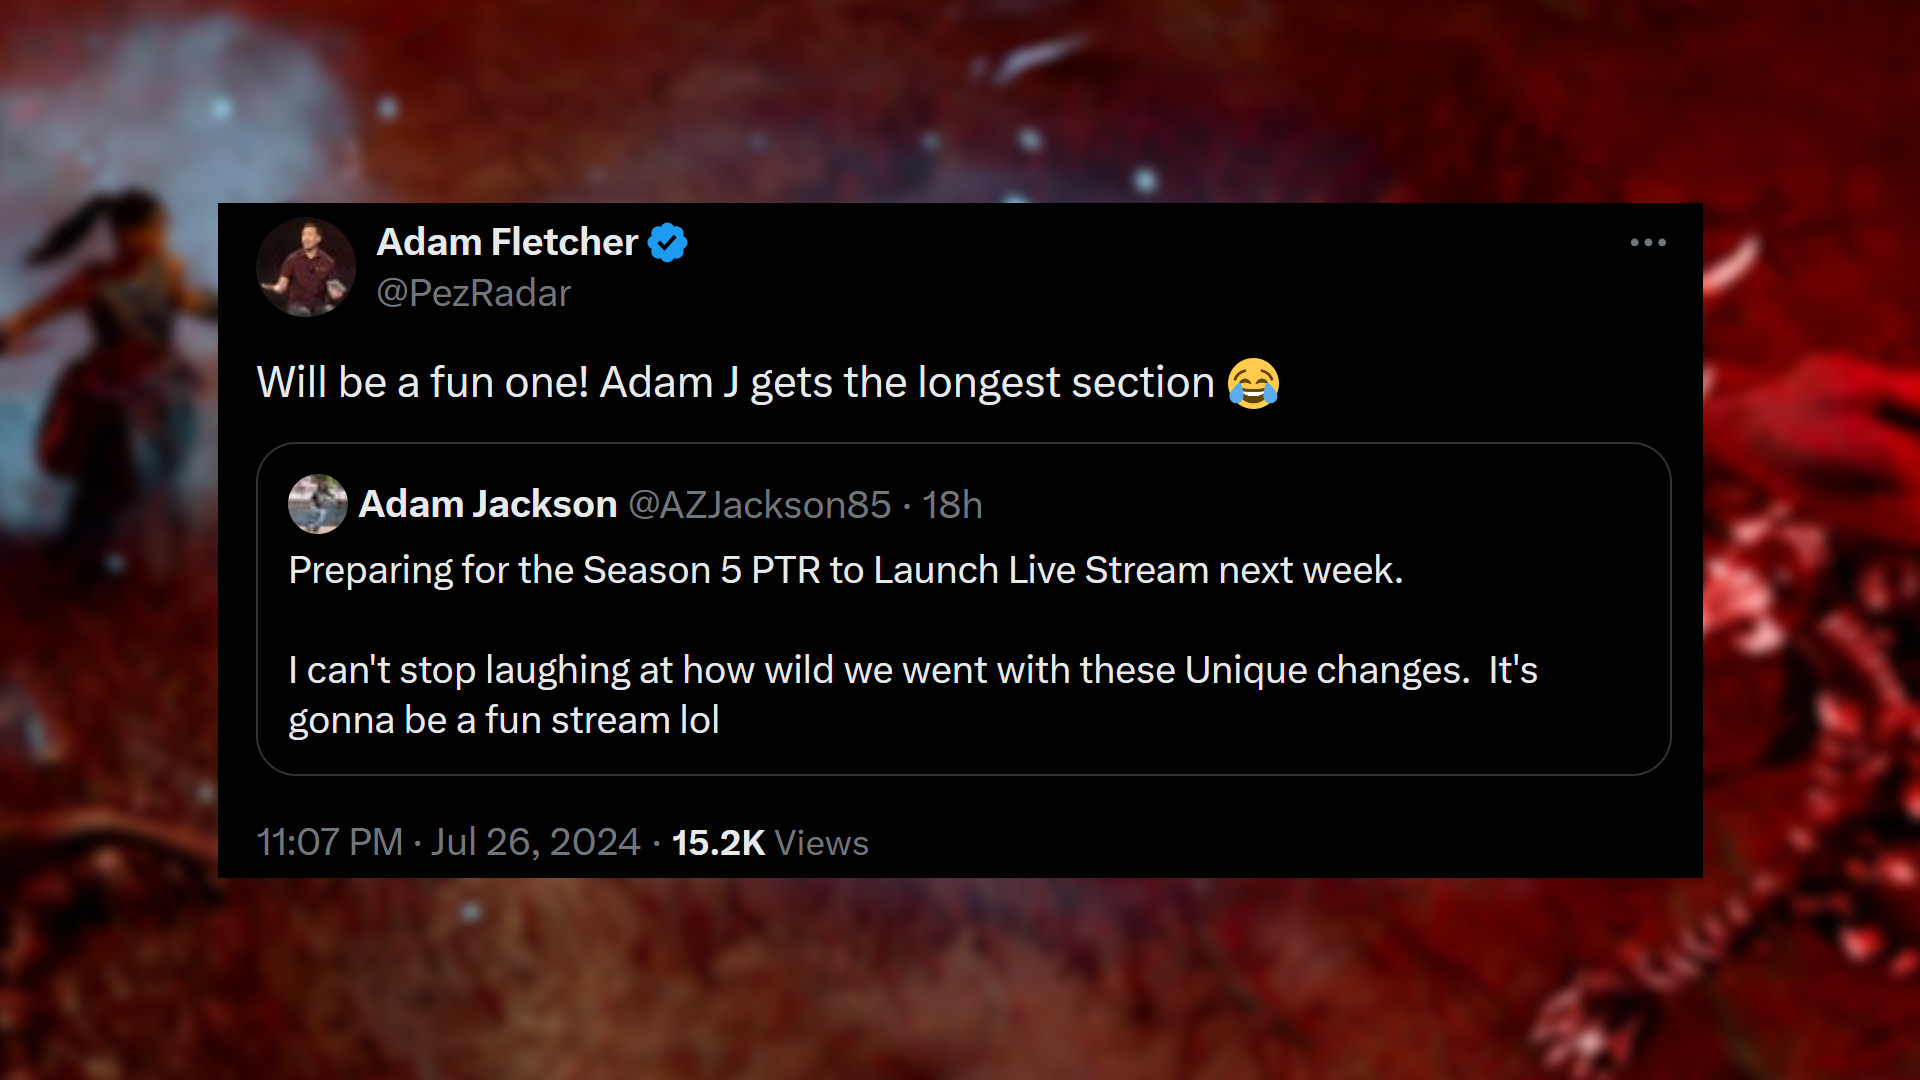 Diablo 4 5. Sezon - Adam Jackson yazıyor: "Sezon 5 PTR'nin önümüzdeki hafta Canlı Yayına Başlamasına Hazırlık. Bu Benzersiz değişikliklerle ne kadar çılgınca davrandığımıza gülmekten kendimi alamıyorum. Eğlenceli bir yayın olacak lol." Adam Fletcher şöyle cevaplıyor: "Çok eğlenceli olacak! En uzun bölüm Adam J'nin olacak."